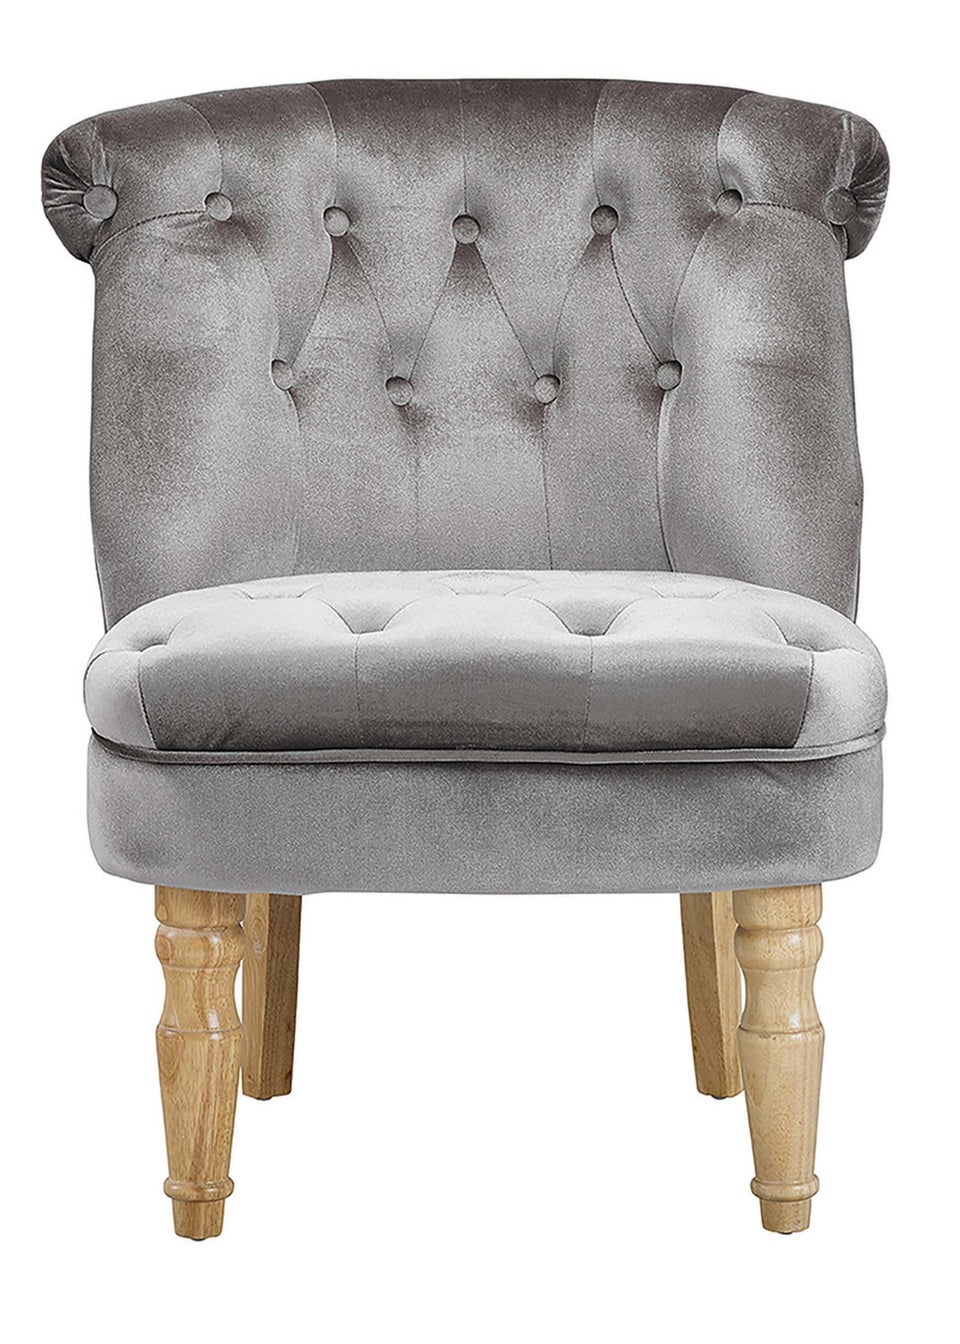 LPD Furniture Charlotte Chair Silver (690x640x770mm)